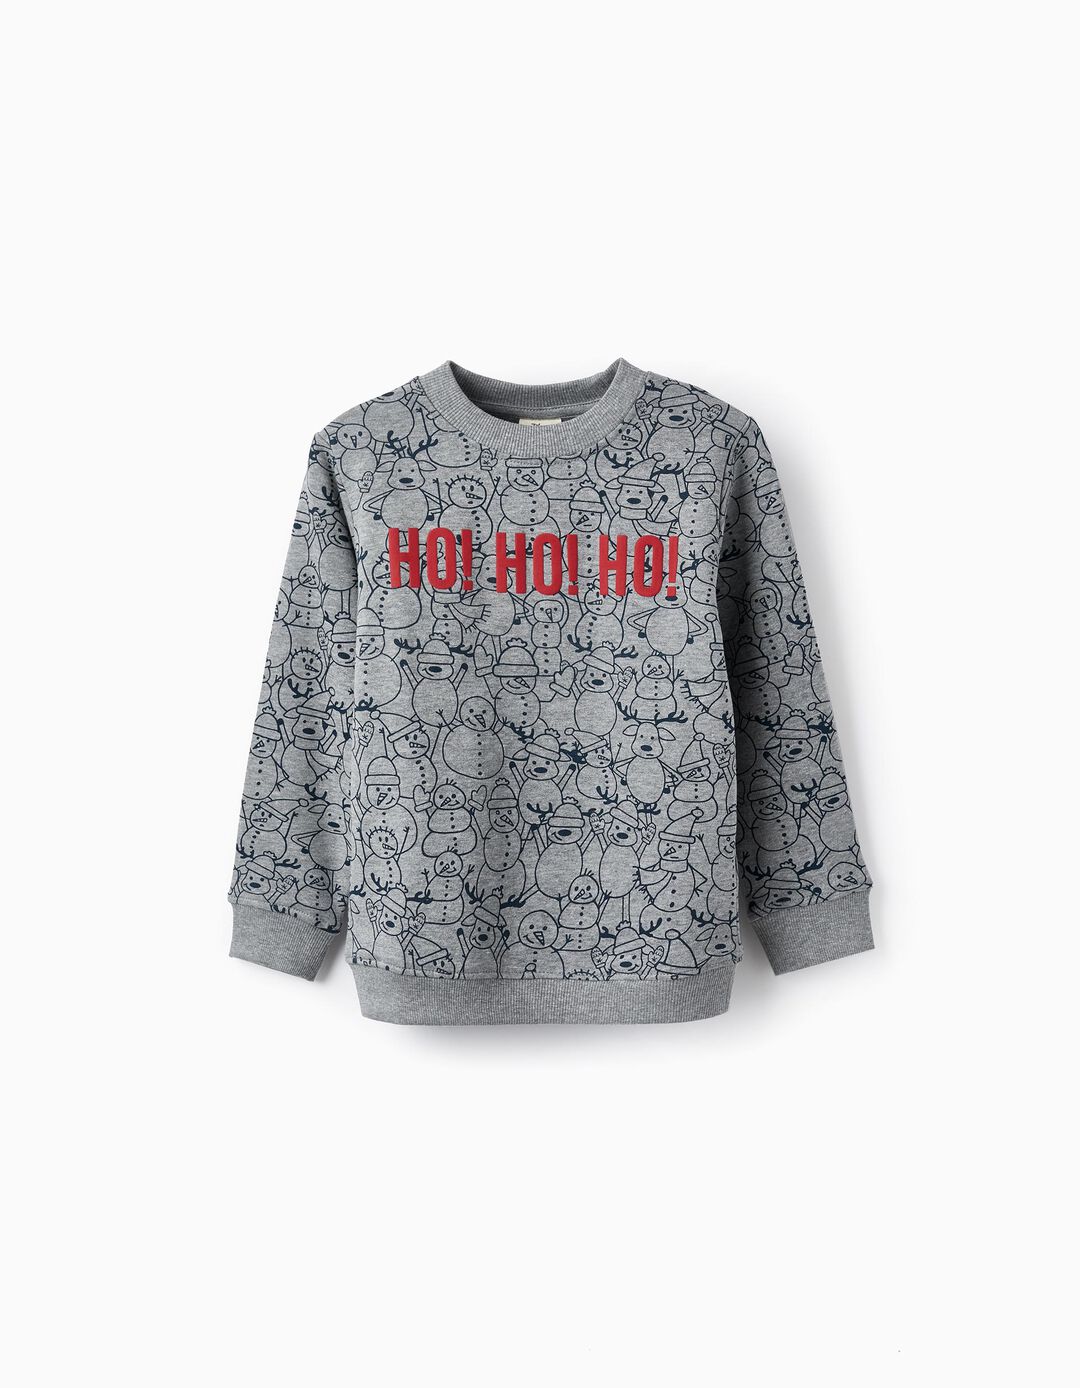 Cotton Sweatshirt for Boys 'Ho! Ho! Ho!', Grey